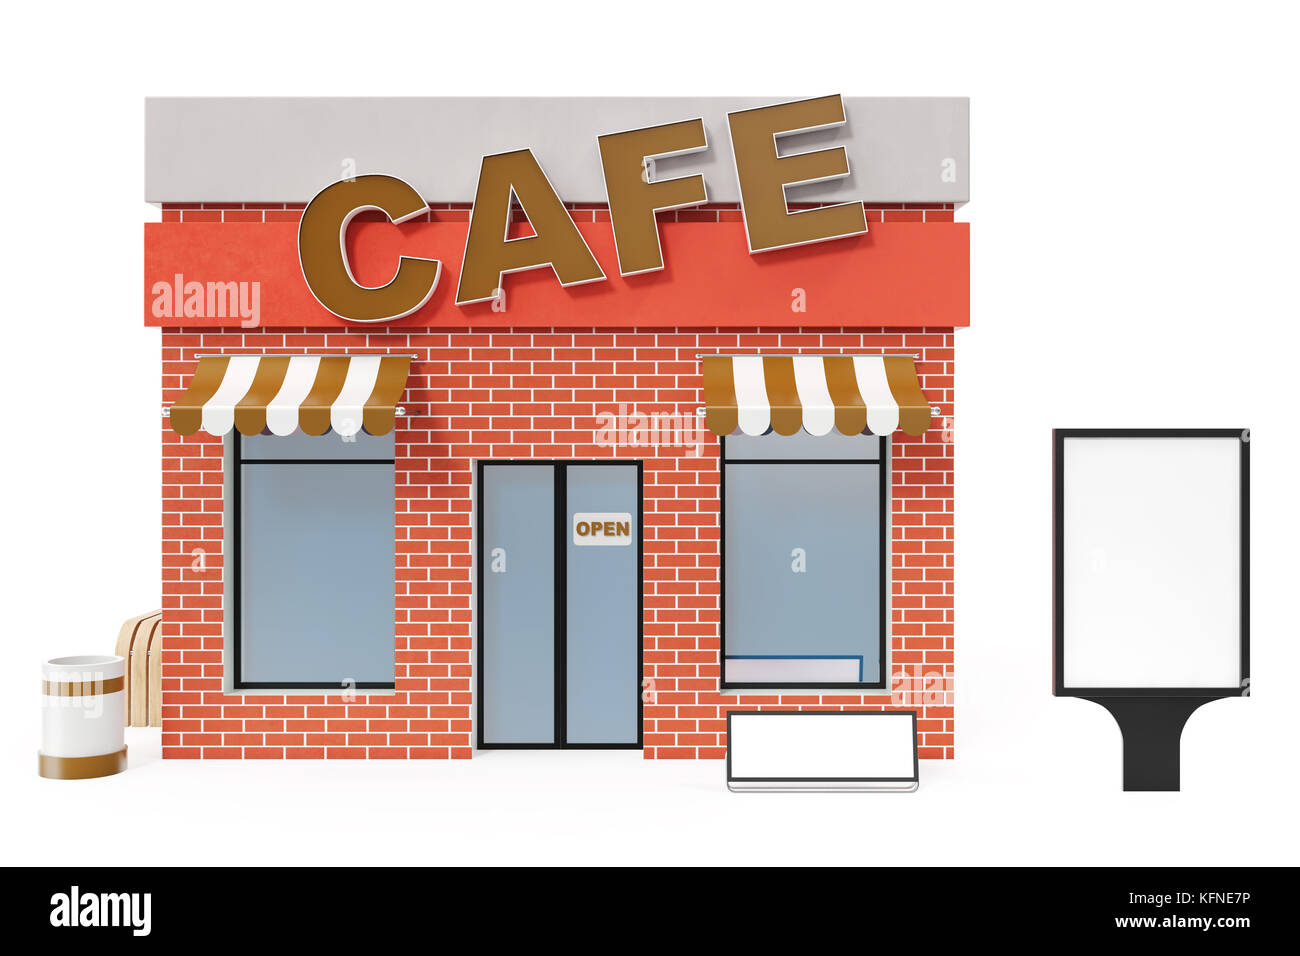 Cafe store avec l'exemplaire de l'espace a isolé sur fond blanc. boutique moderne des bâtiments, façades de magasin du marché extérieur. façade extérieure store Building, 3D Rendering Banque D'Images